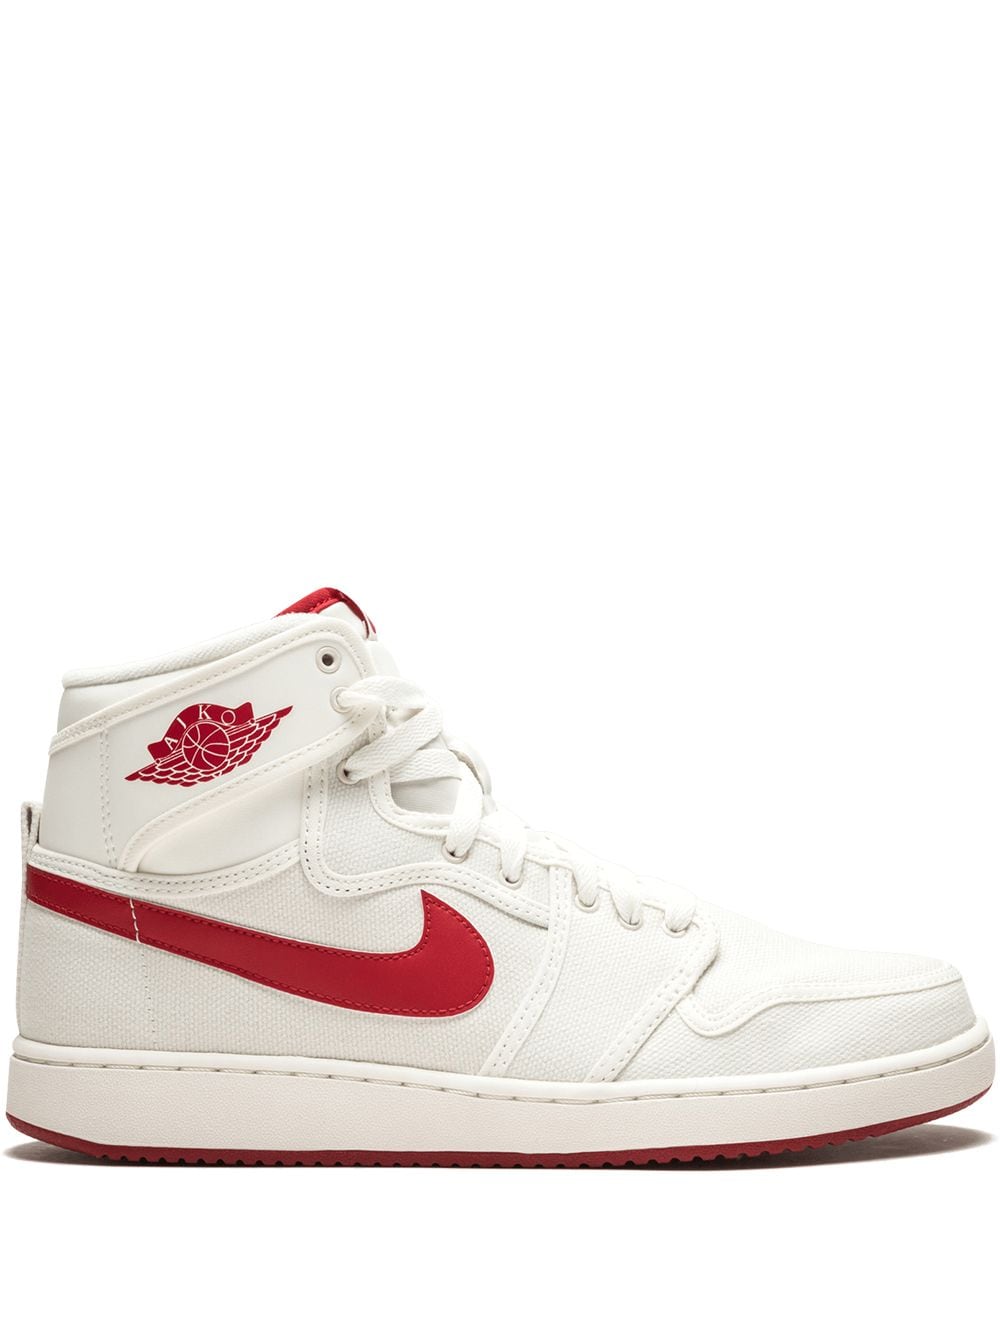 Jordan Air Jordan 1 KO sneakers - White